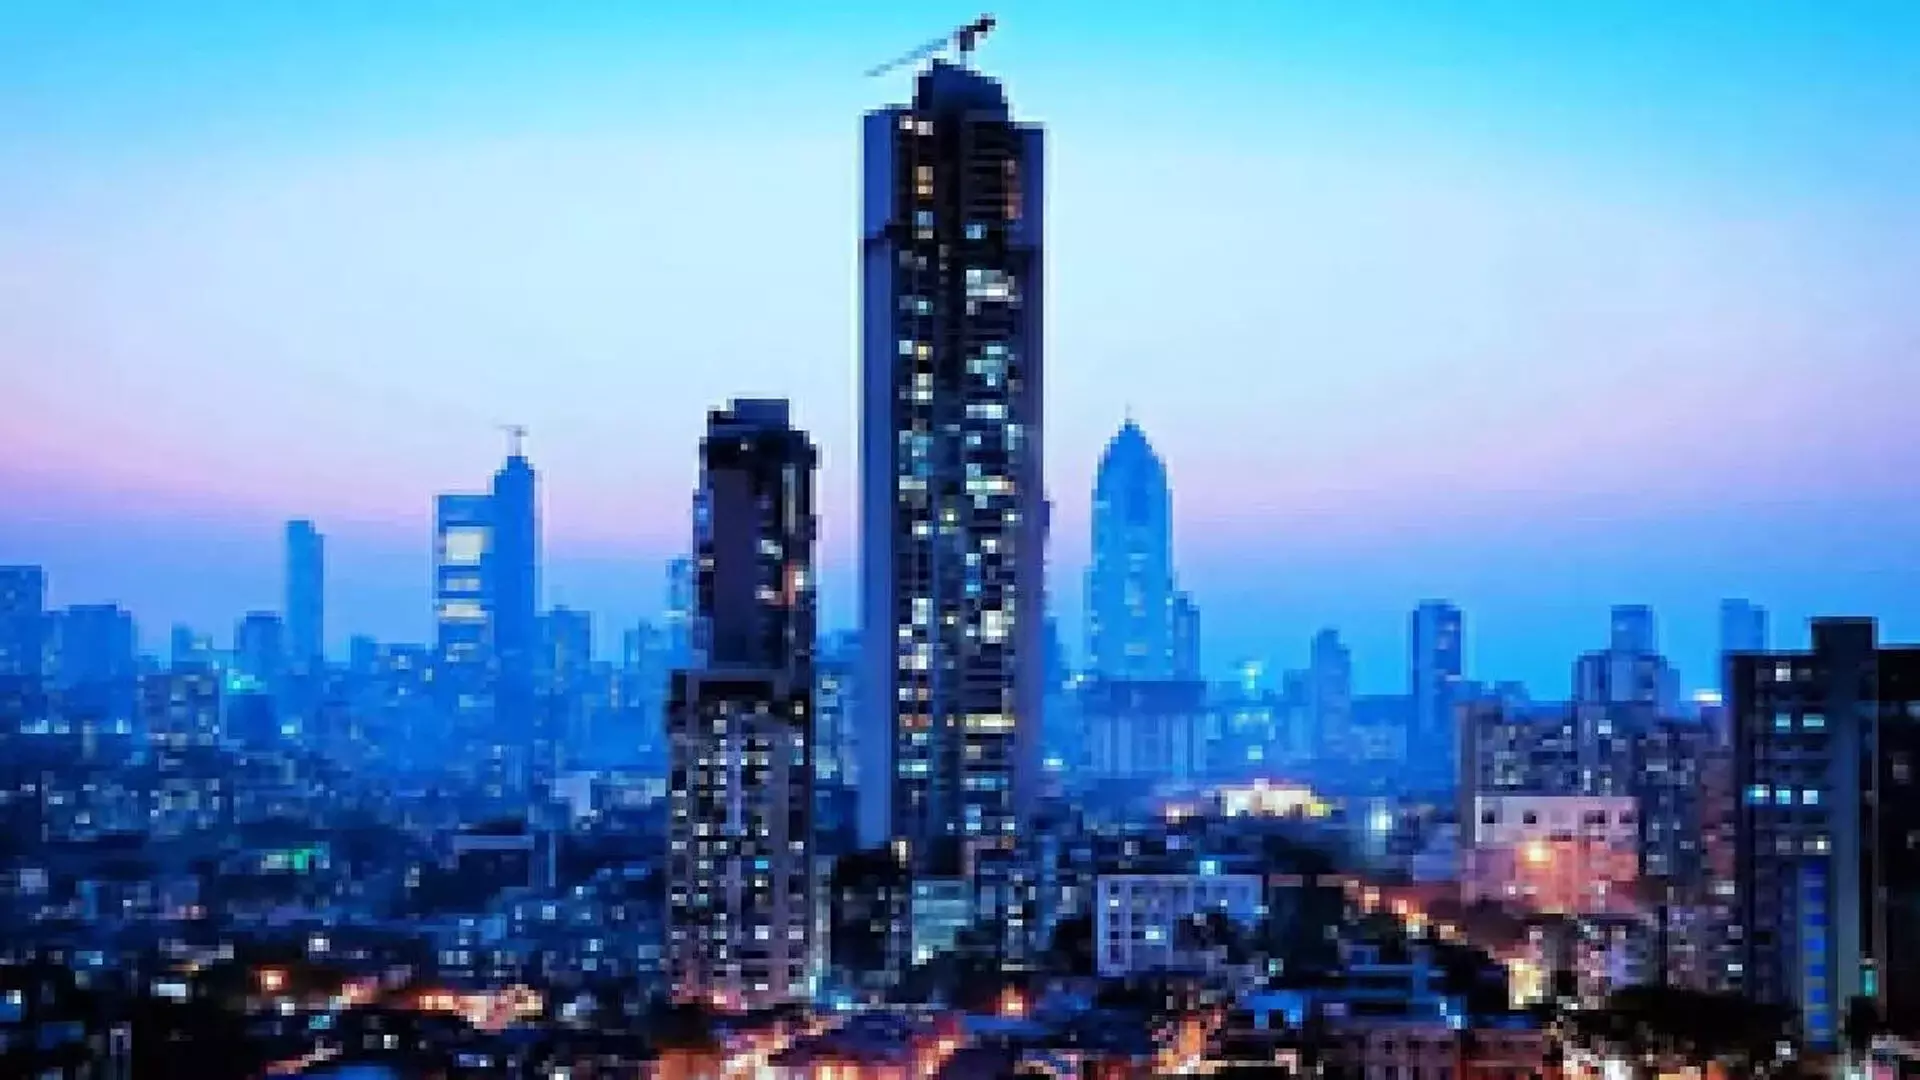 Mumbai प्रवासियों के लिए भारत का सबसे महंगा शहर बना हुआ है- Survey